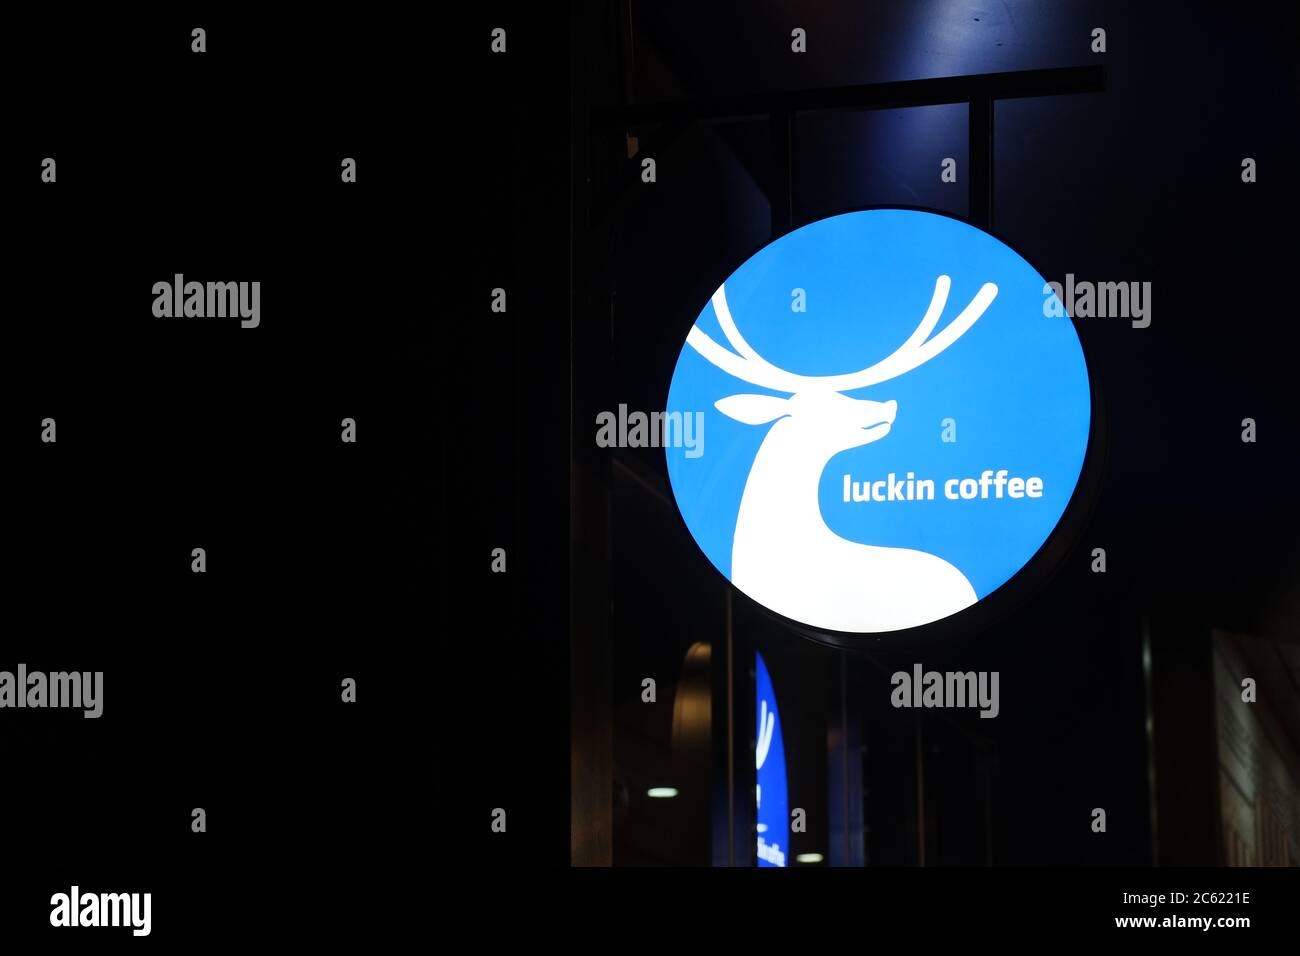 Primo piano del logo della caffetteria Luckin di notte. Marchio di caffè cinese che si è esposto a una fabbricazione severa dei dati di vendita Foto Stock